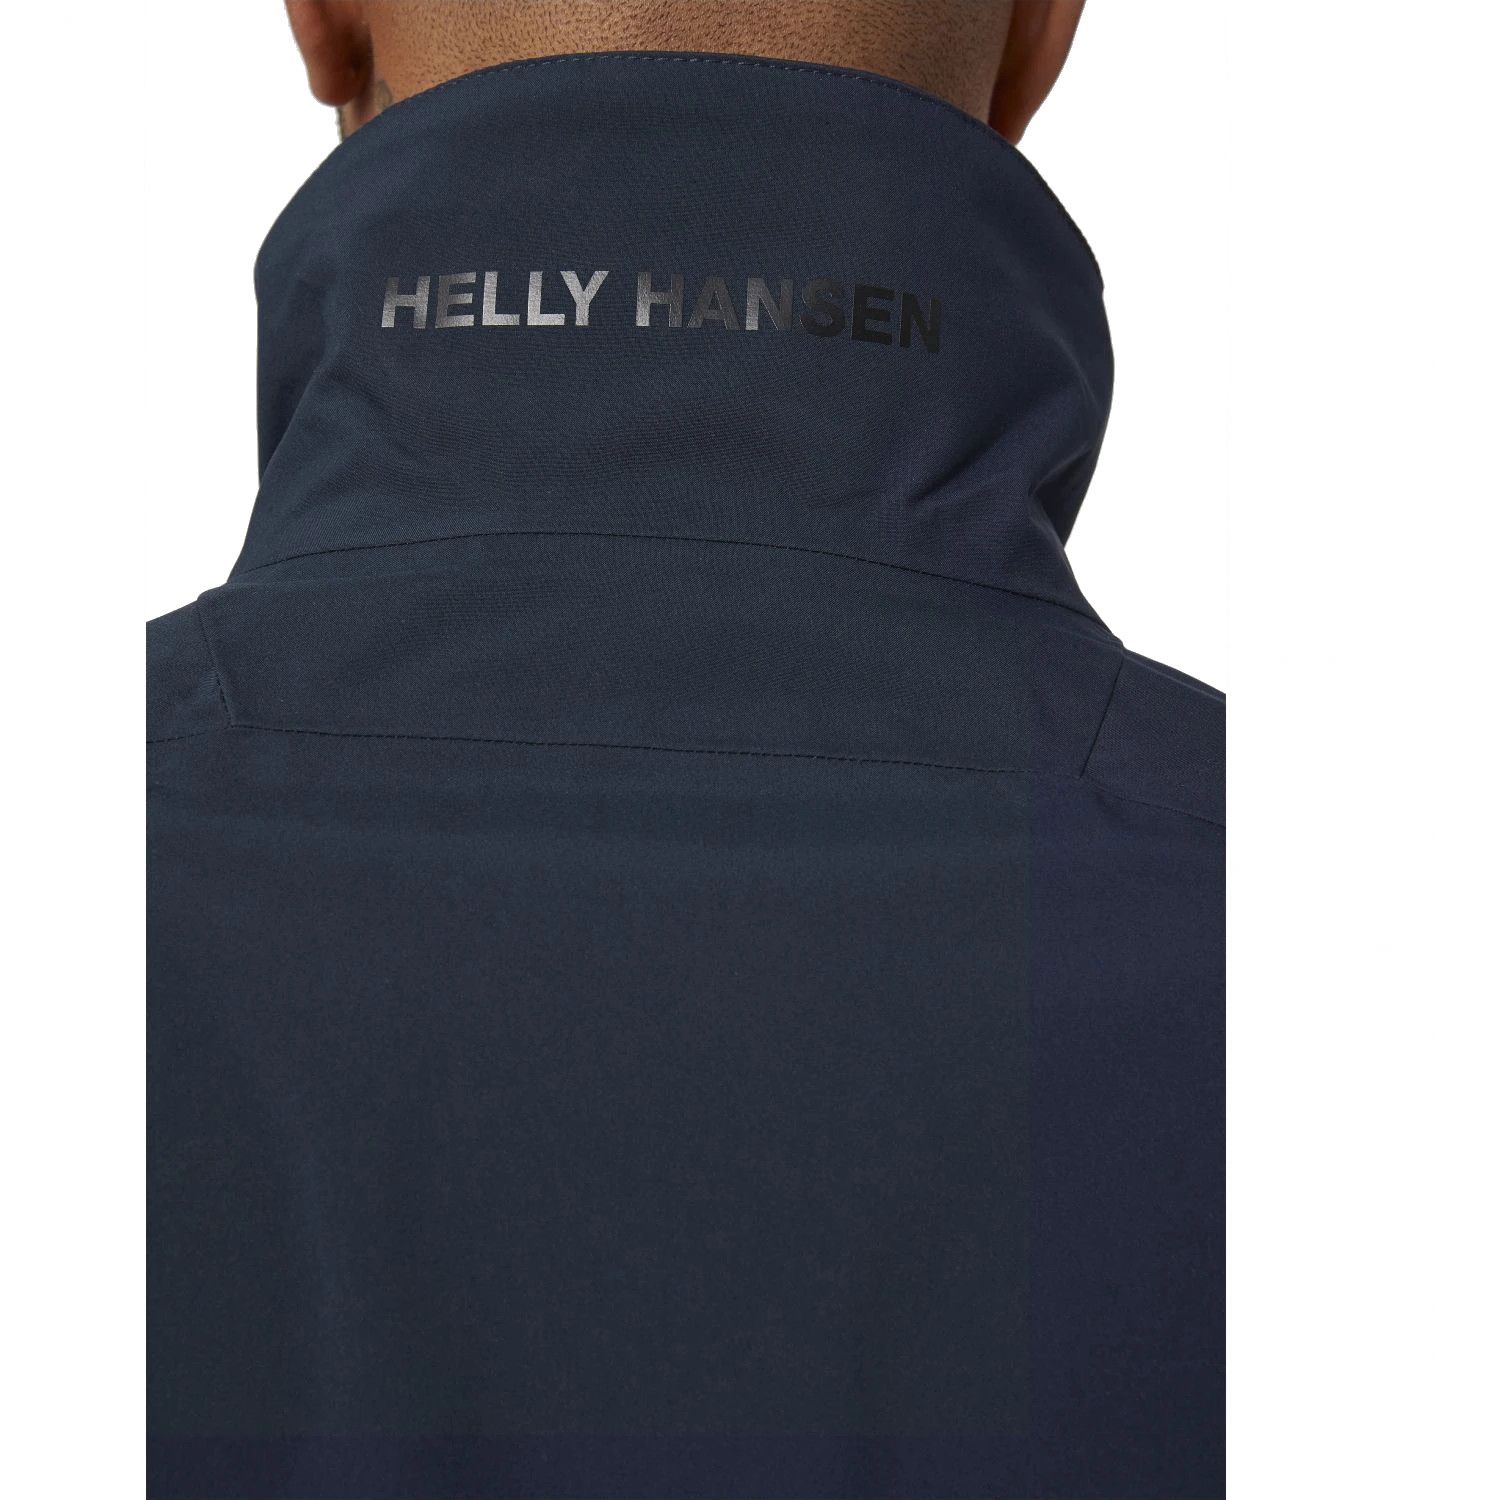 Helly Hansen HP Racing, takki, miesten, laivasto